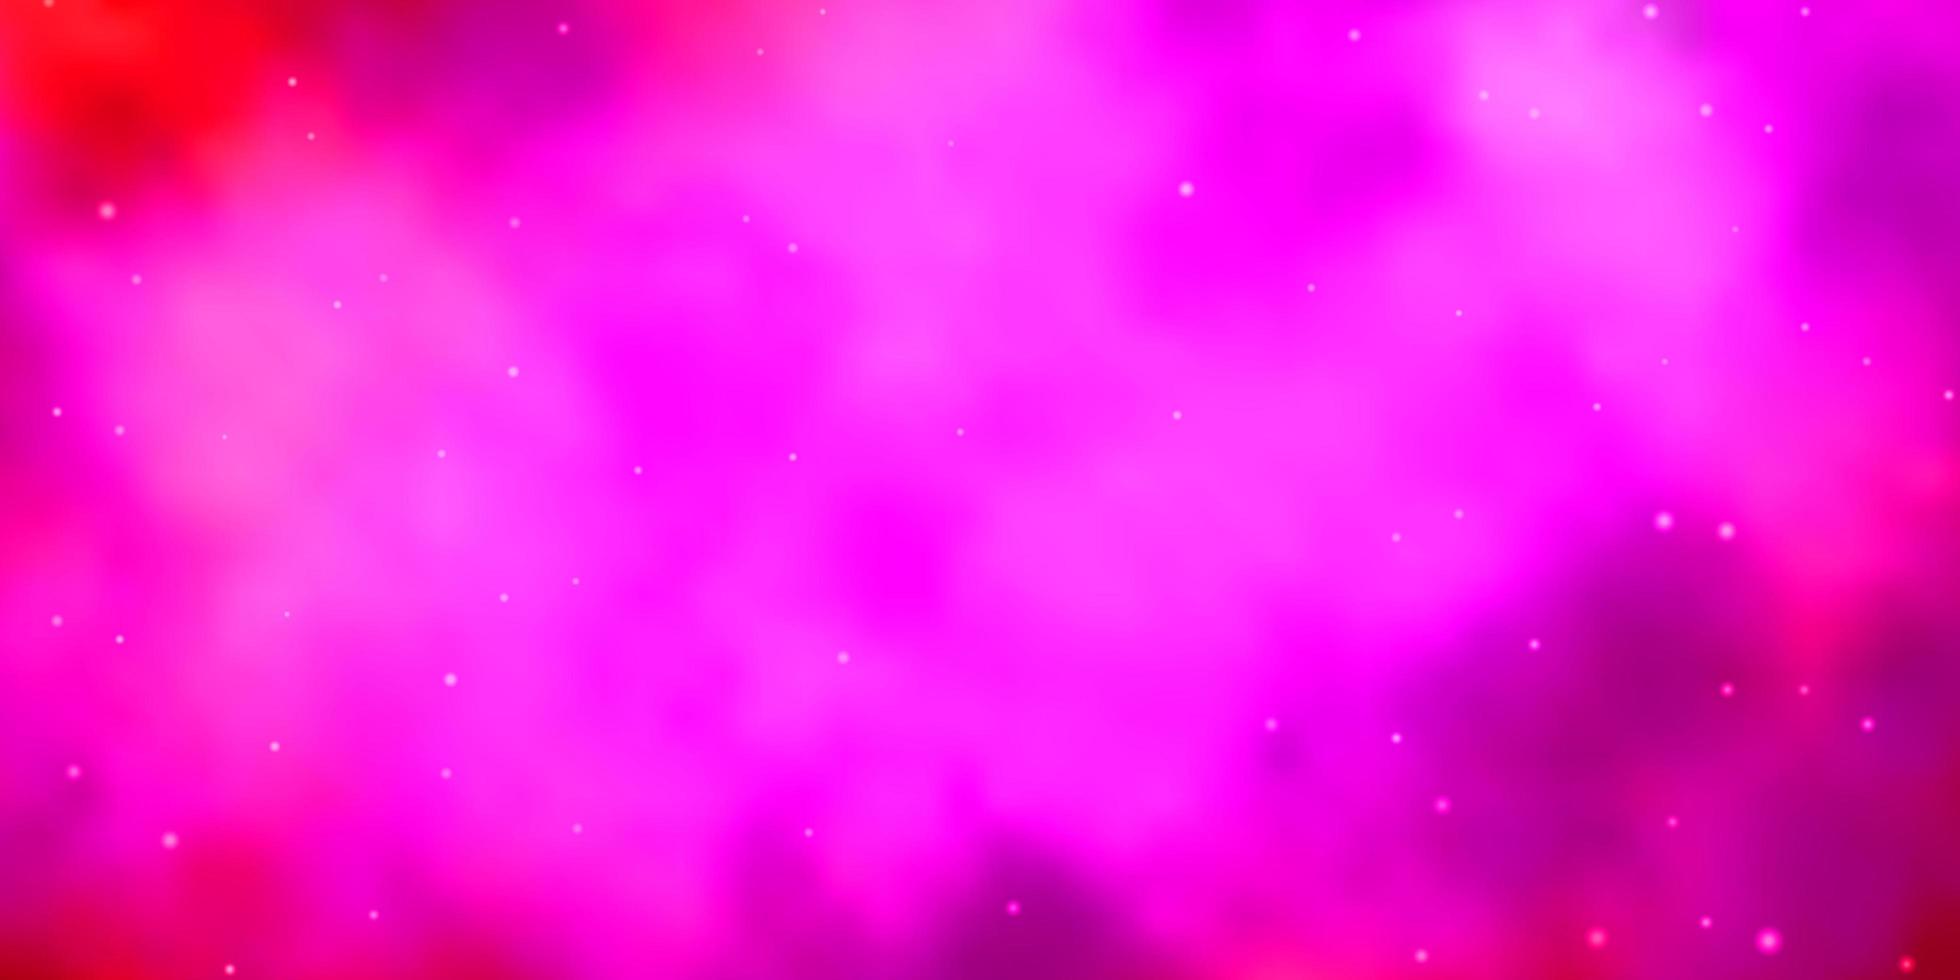 Fondo de vector rosa claro con estrellas pequeñas y grandes. colorida ilustración en estilo abstracto con estrellas de degradado. tema para teléfonos celulares.